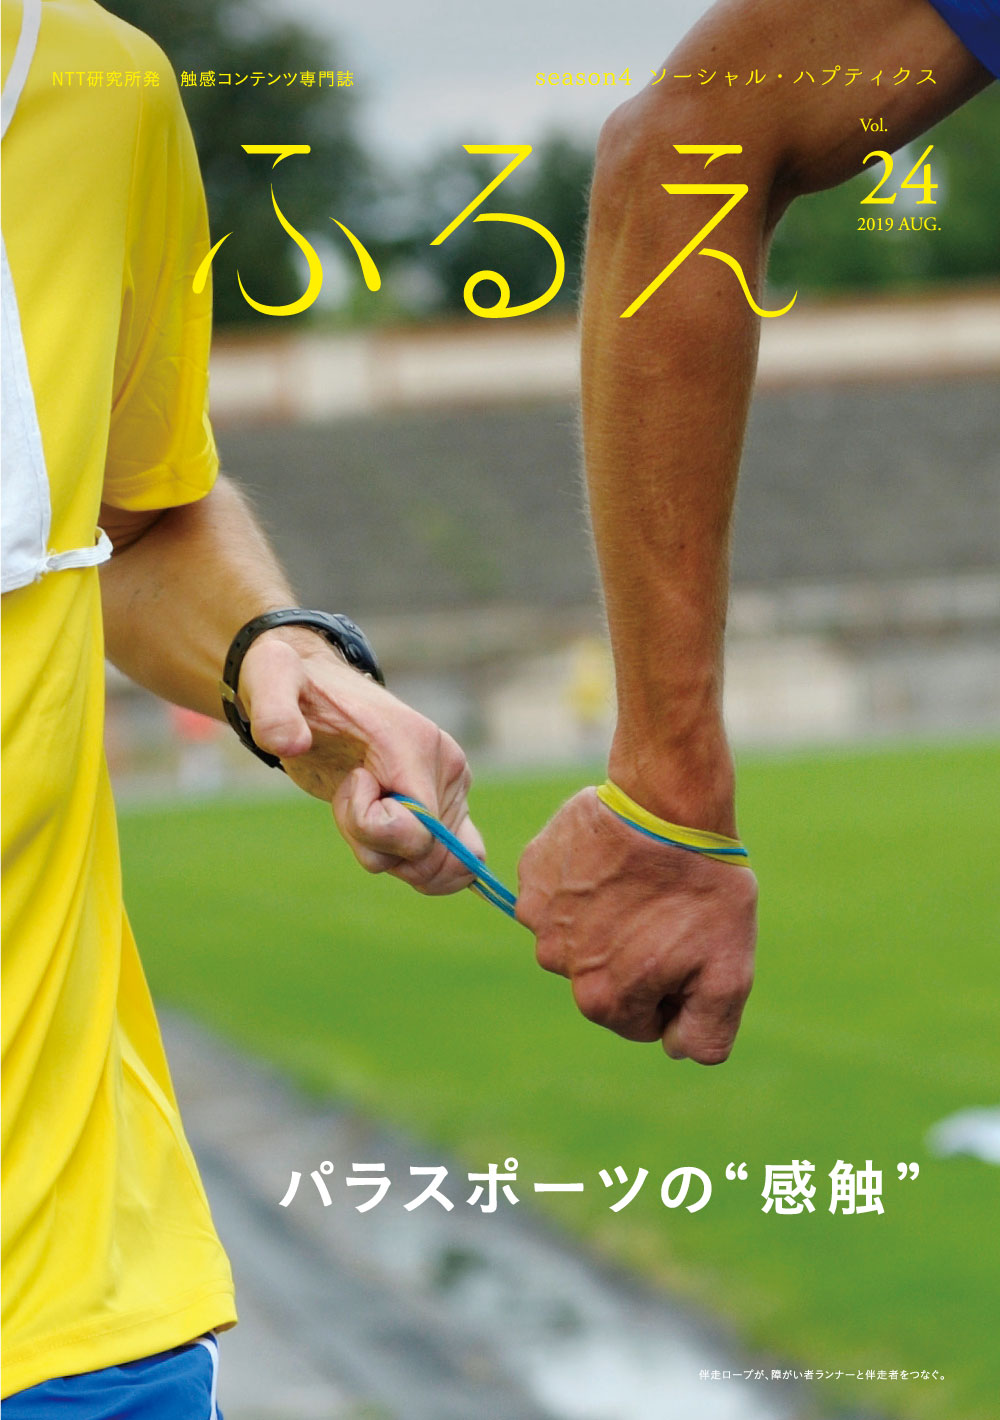 触感コンテンツ専門誌 ふるえ Vol.24 ソーシャル・ハプティクス パラスポーツの“感触”